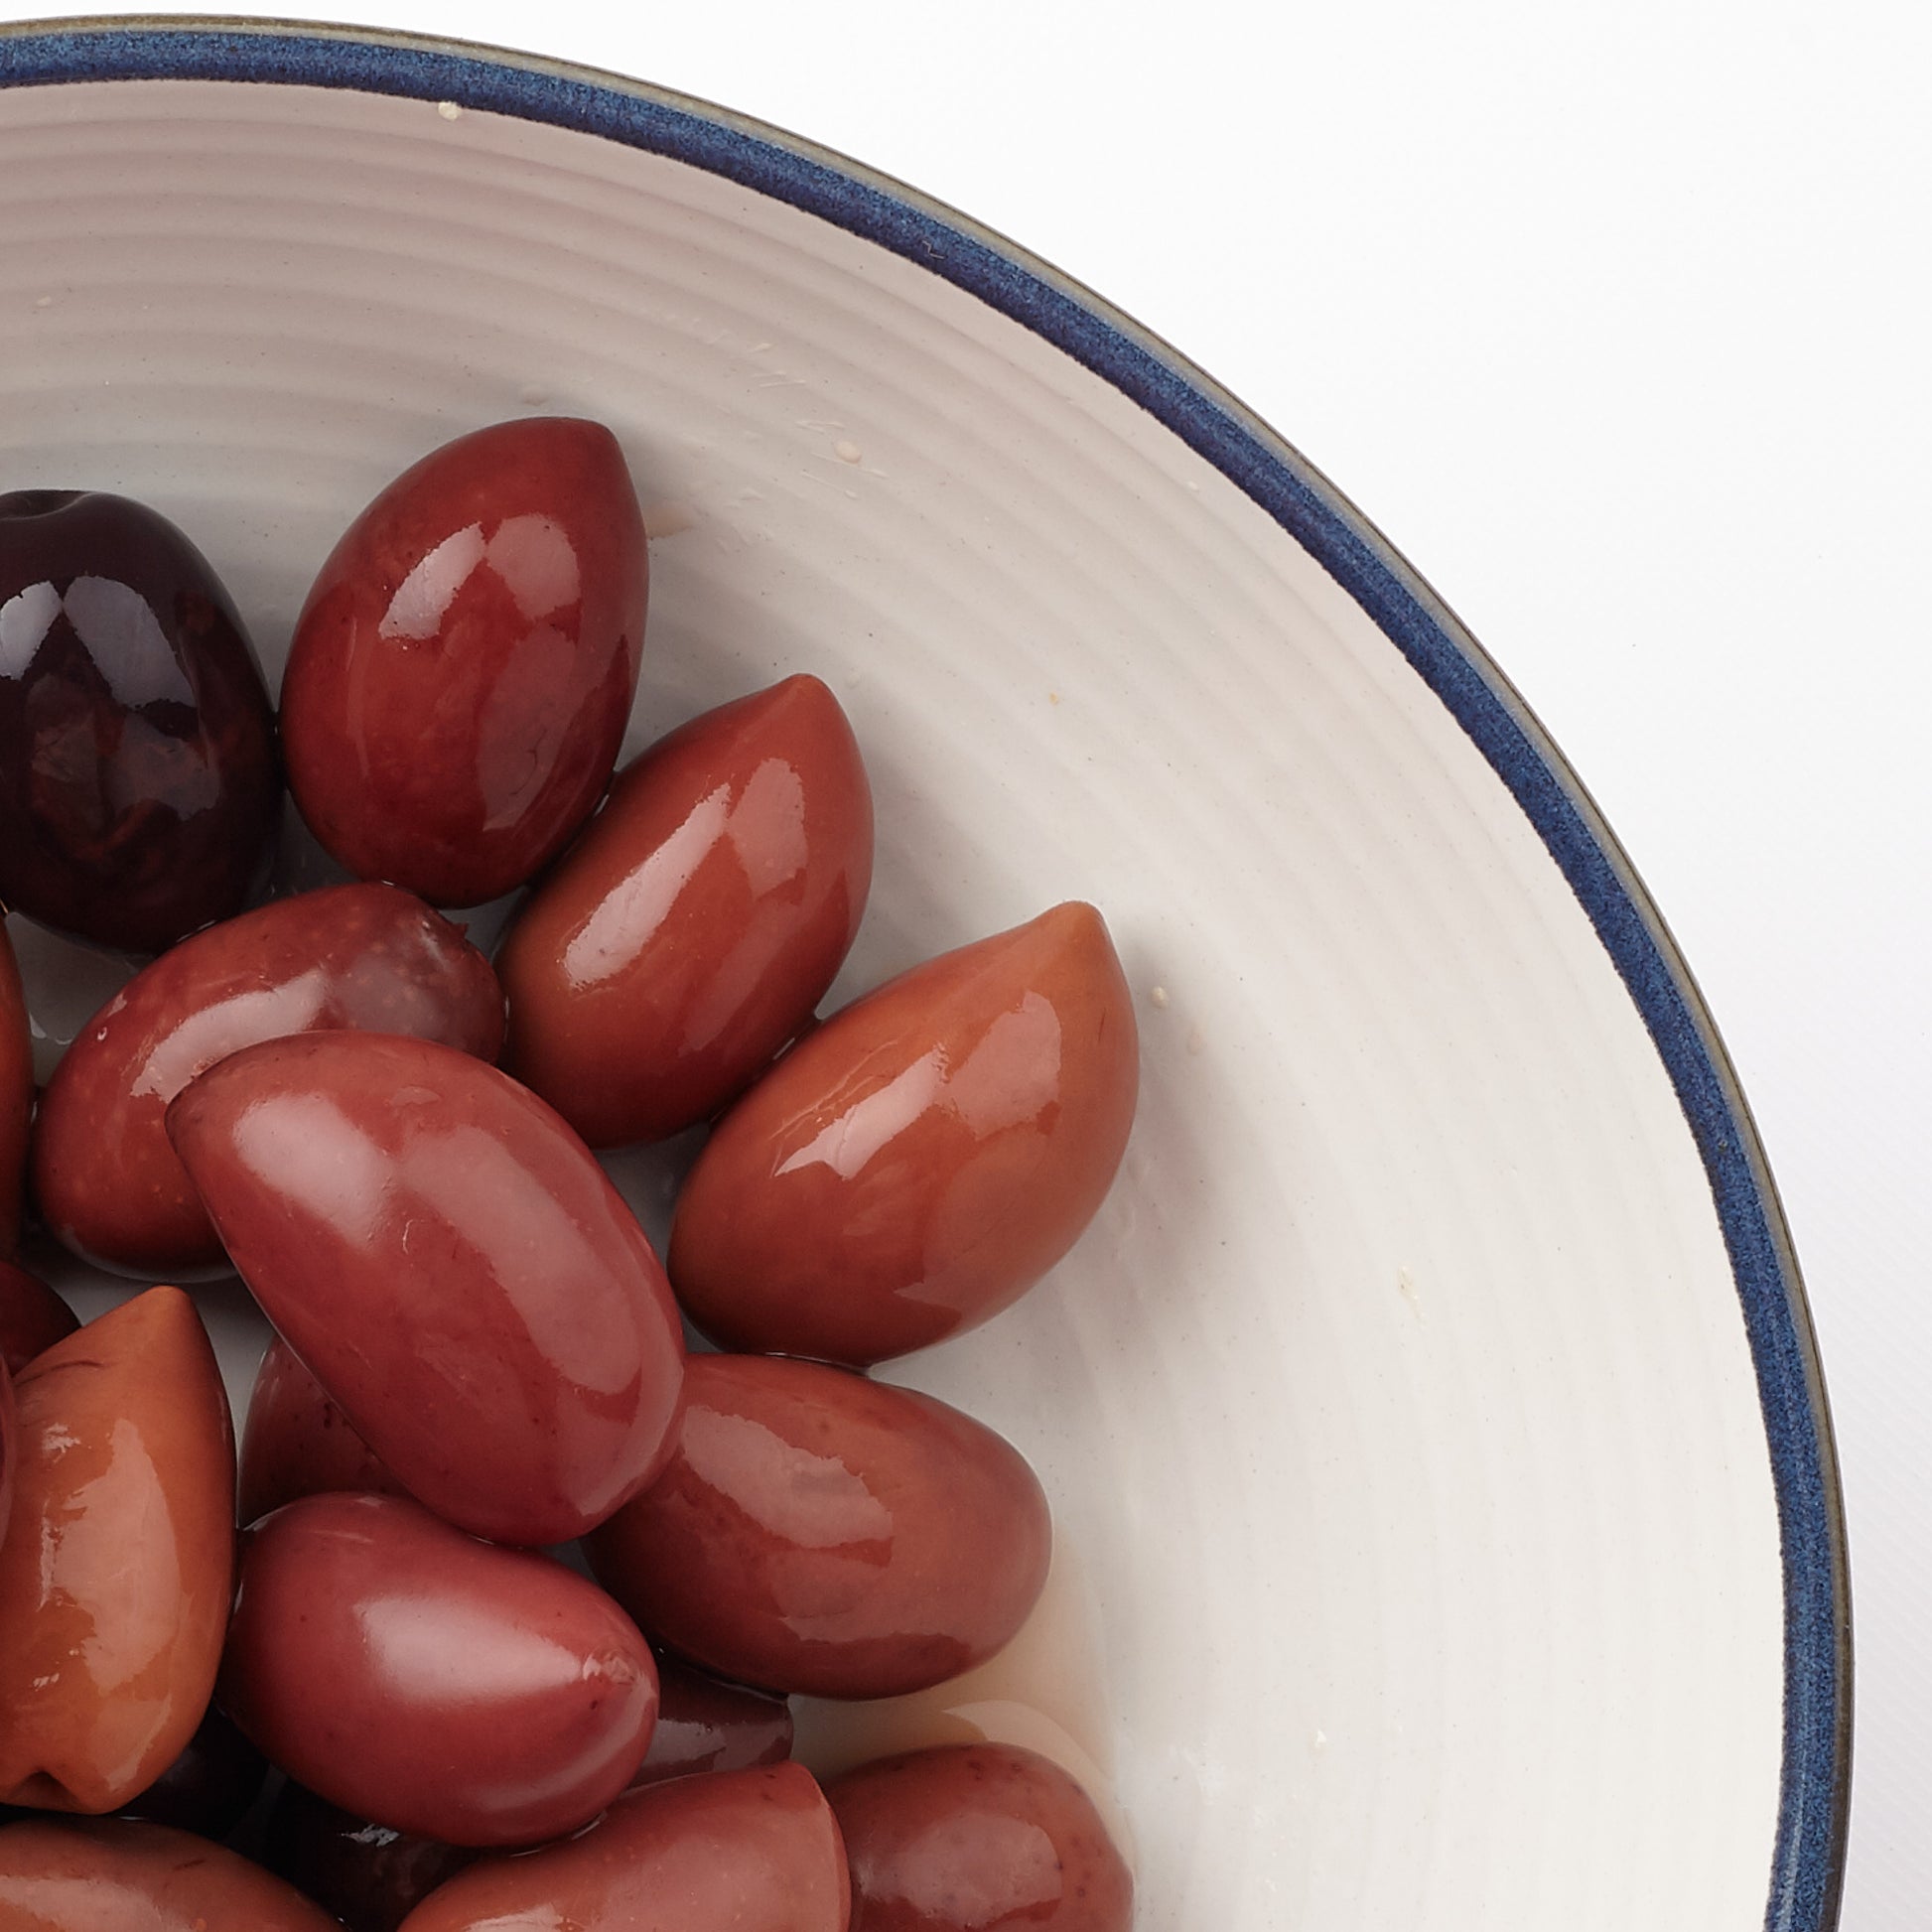 Close up of kalamata olives in a bowl. Yummy.